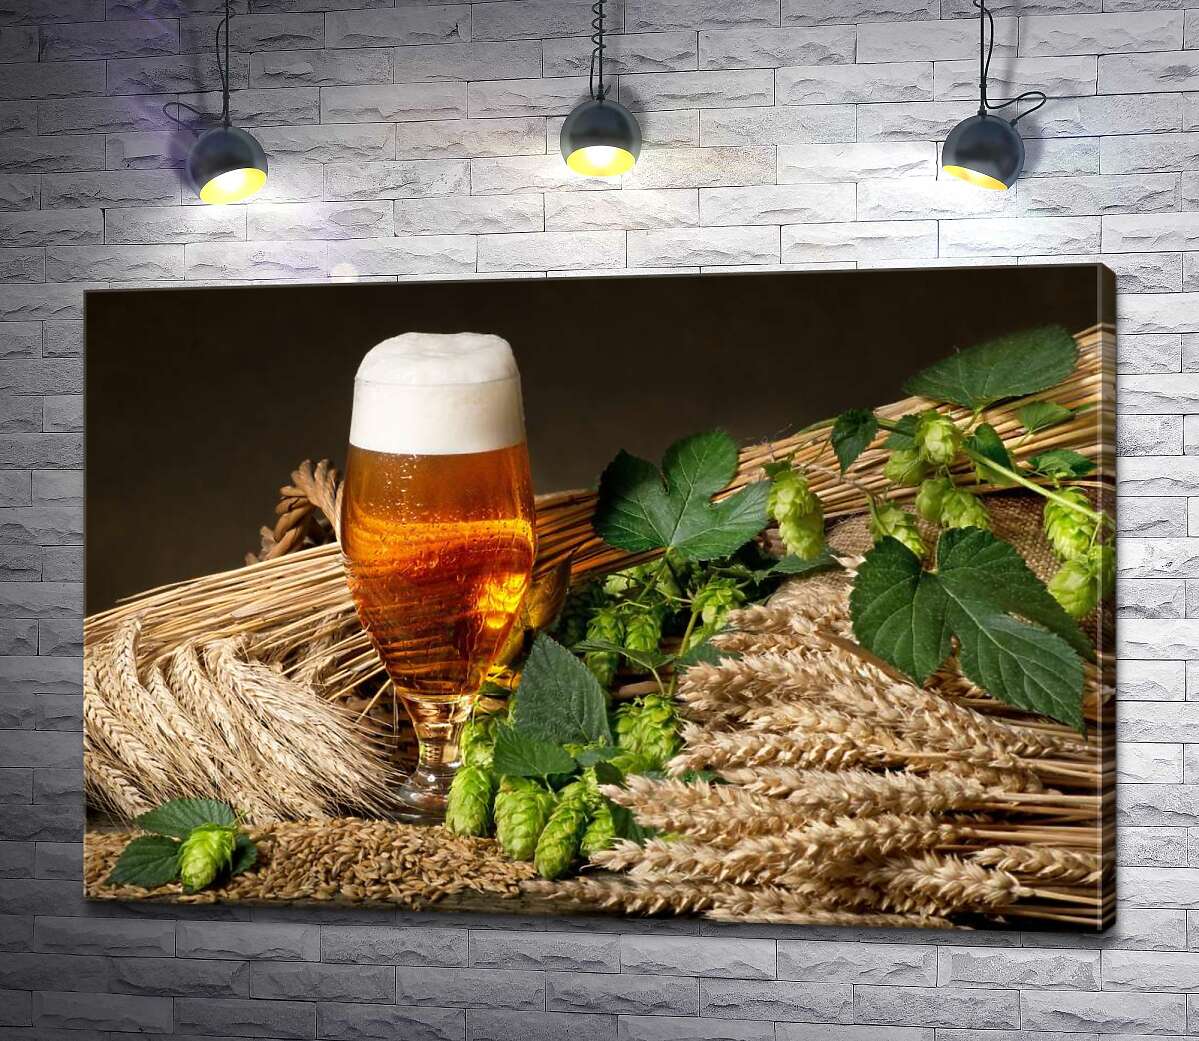 картина Стакан янтарного пива среди снопов пшеницы, ячменя и зеленых головок хмеля